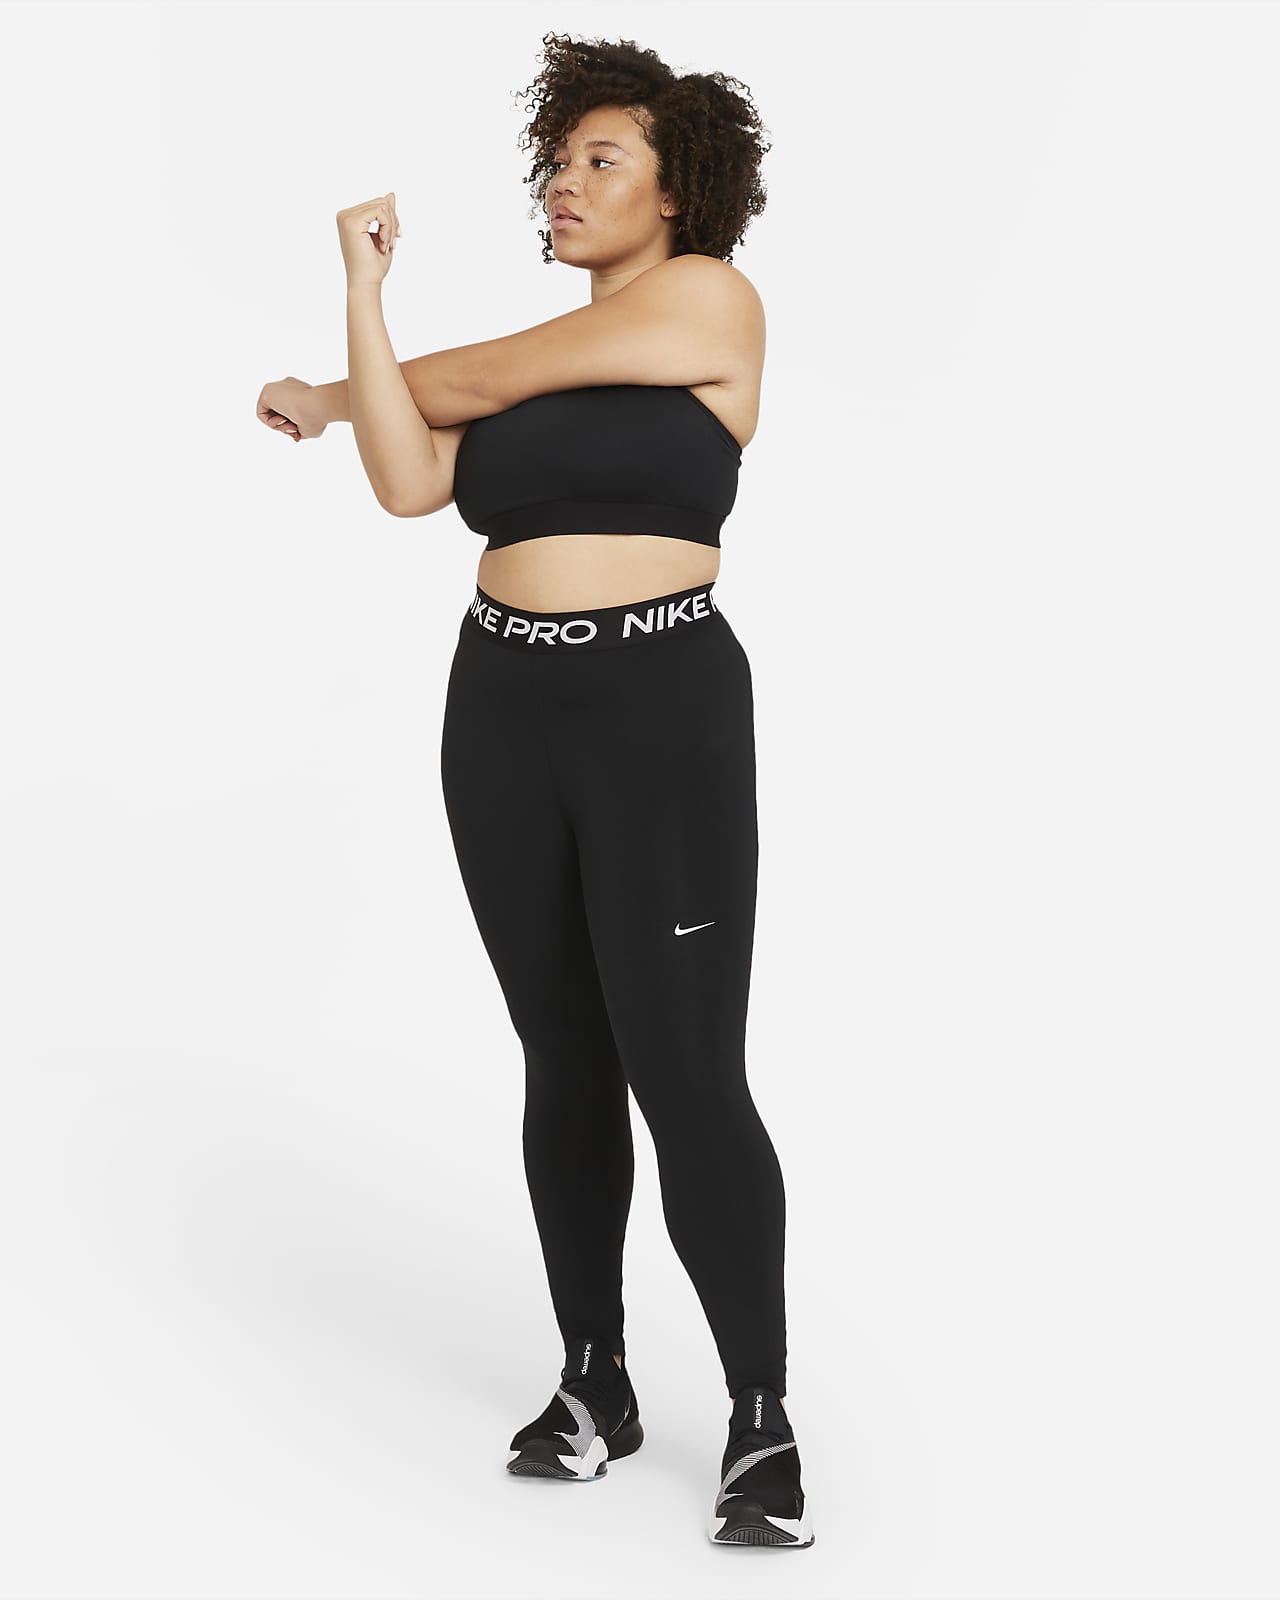 Nike Pro 365 Women's Leggings (Plus Size). Nike BE